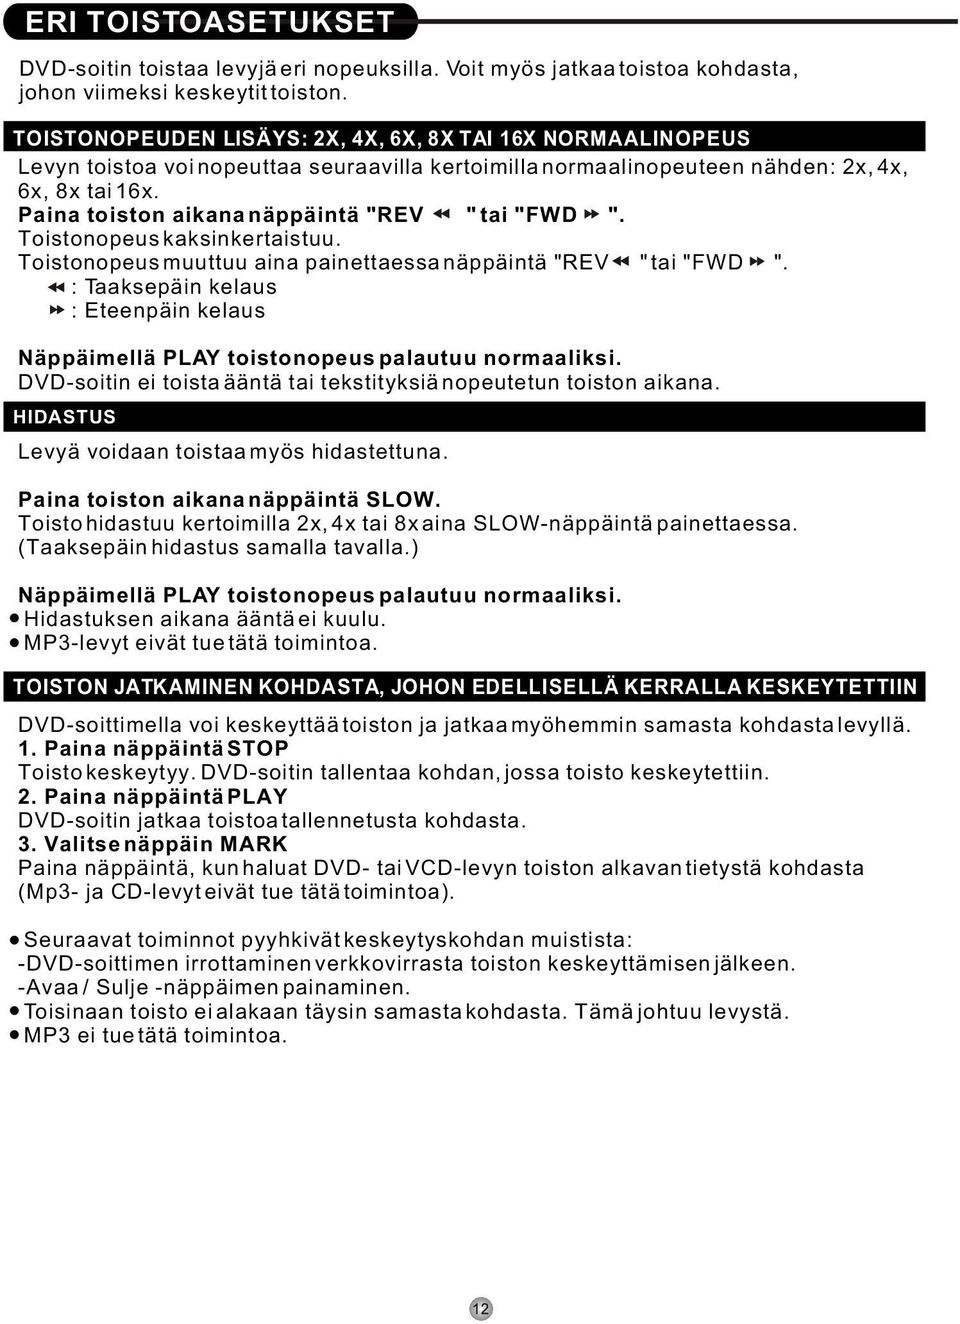 DVD-778KM Käyttöohje TÄRKEÄÄ - PDF Ilmainen lataus